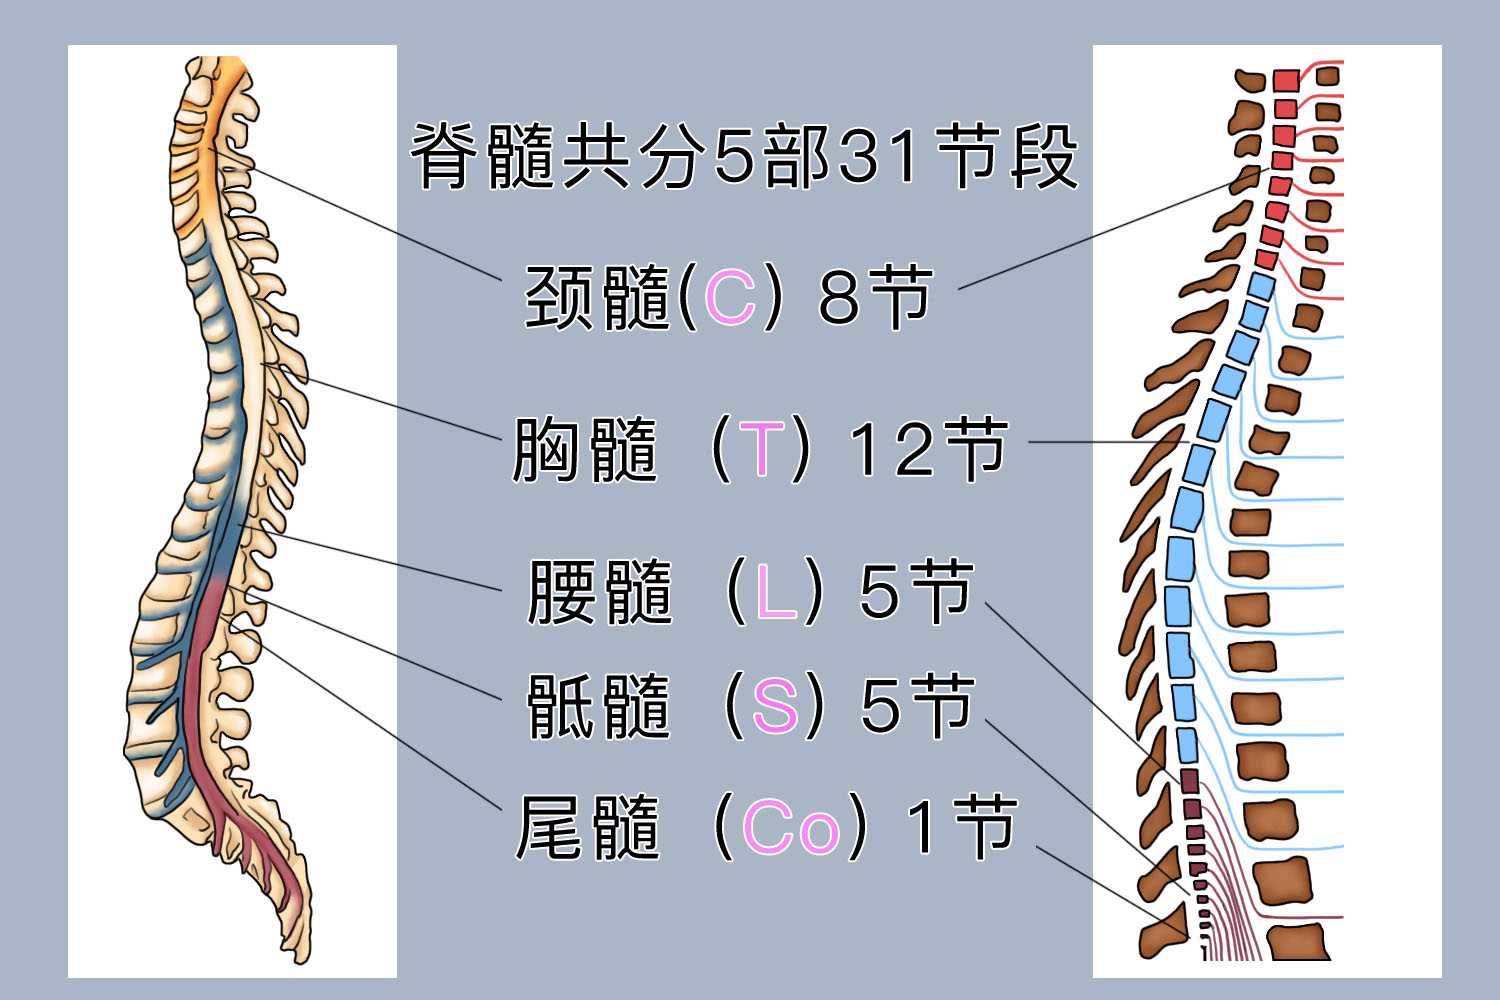 脊髓和脊神经模式图图片